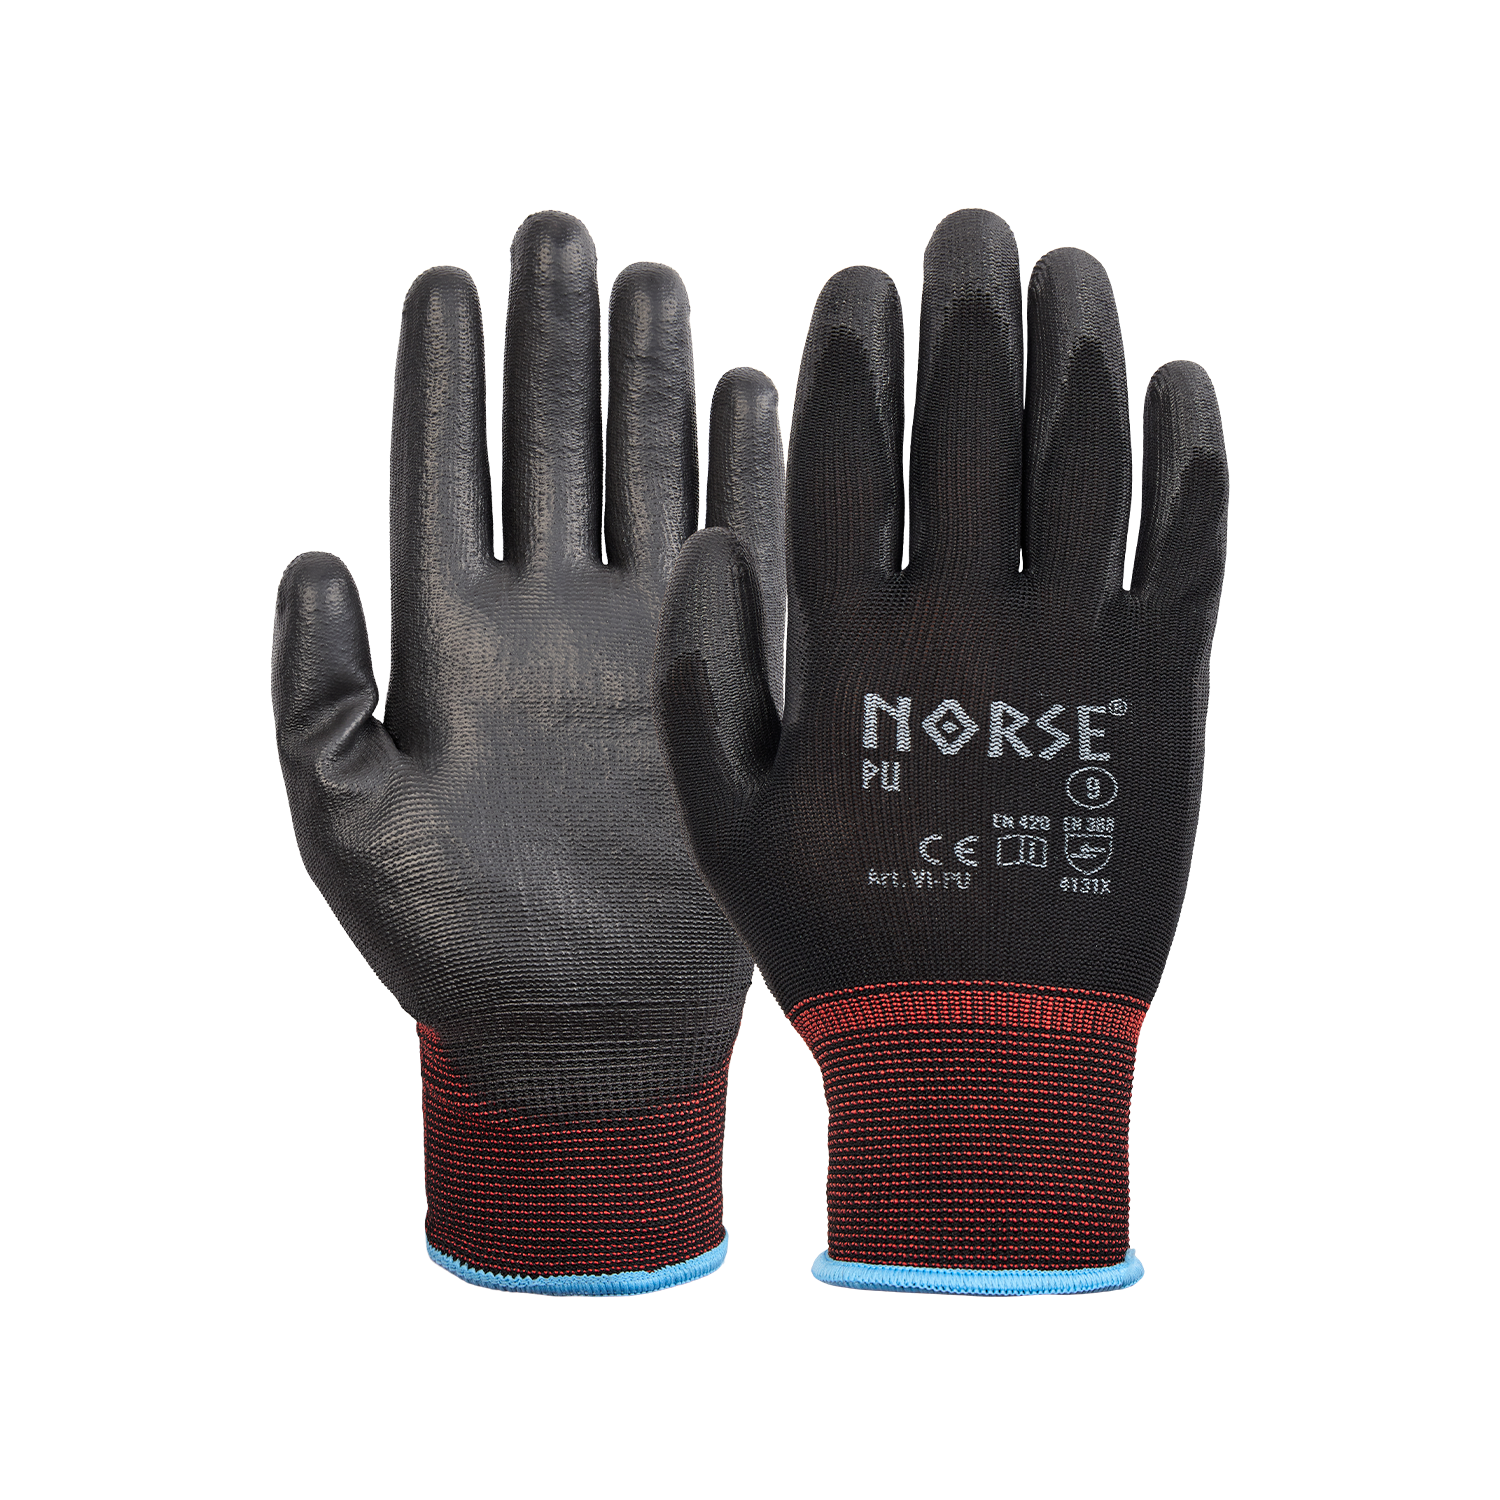 NORSE PU Black assembly gloves size 9